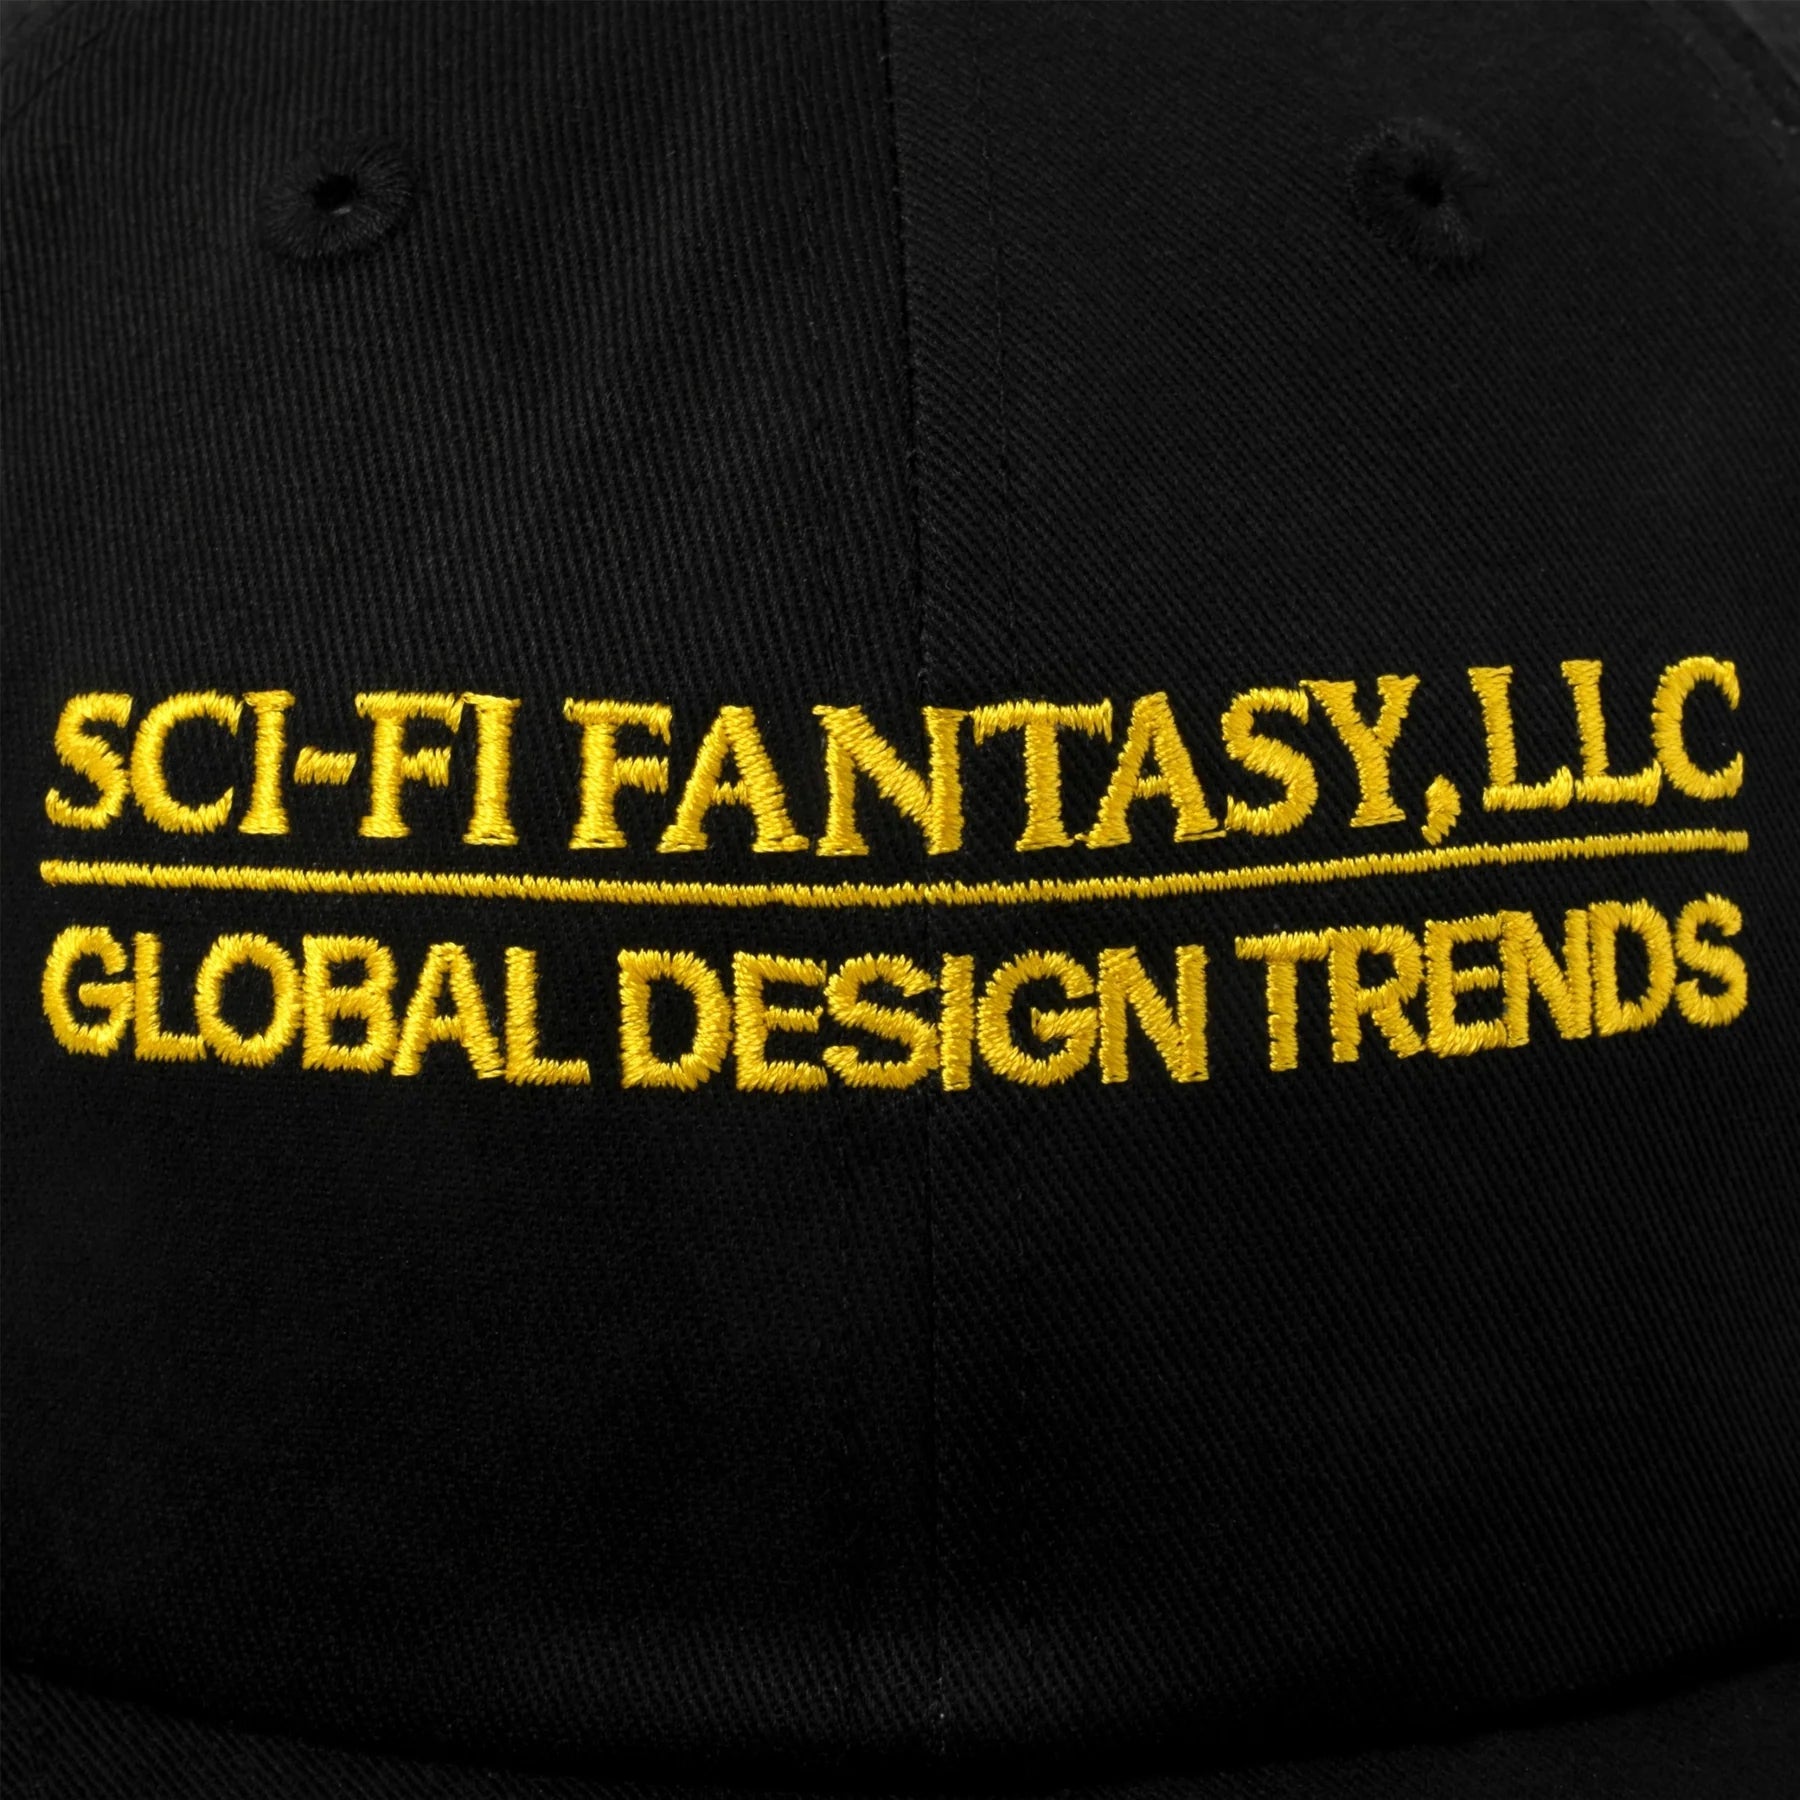 Sci-Fi Fantasy Global Design Trends Cap Cap Sci-Fi Fantasy 